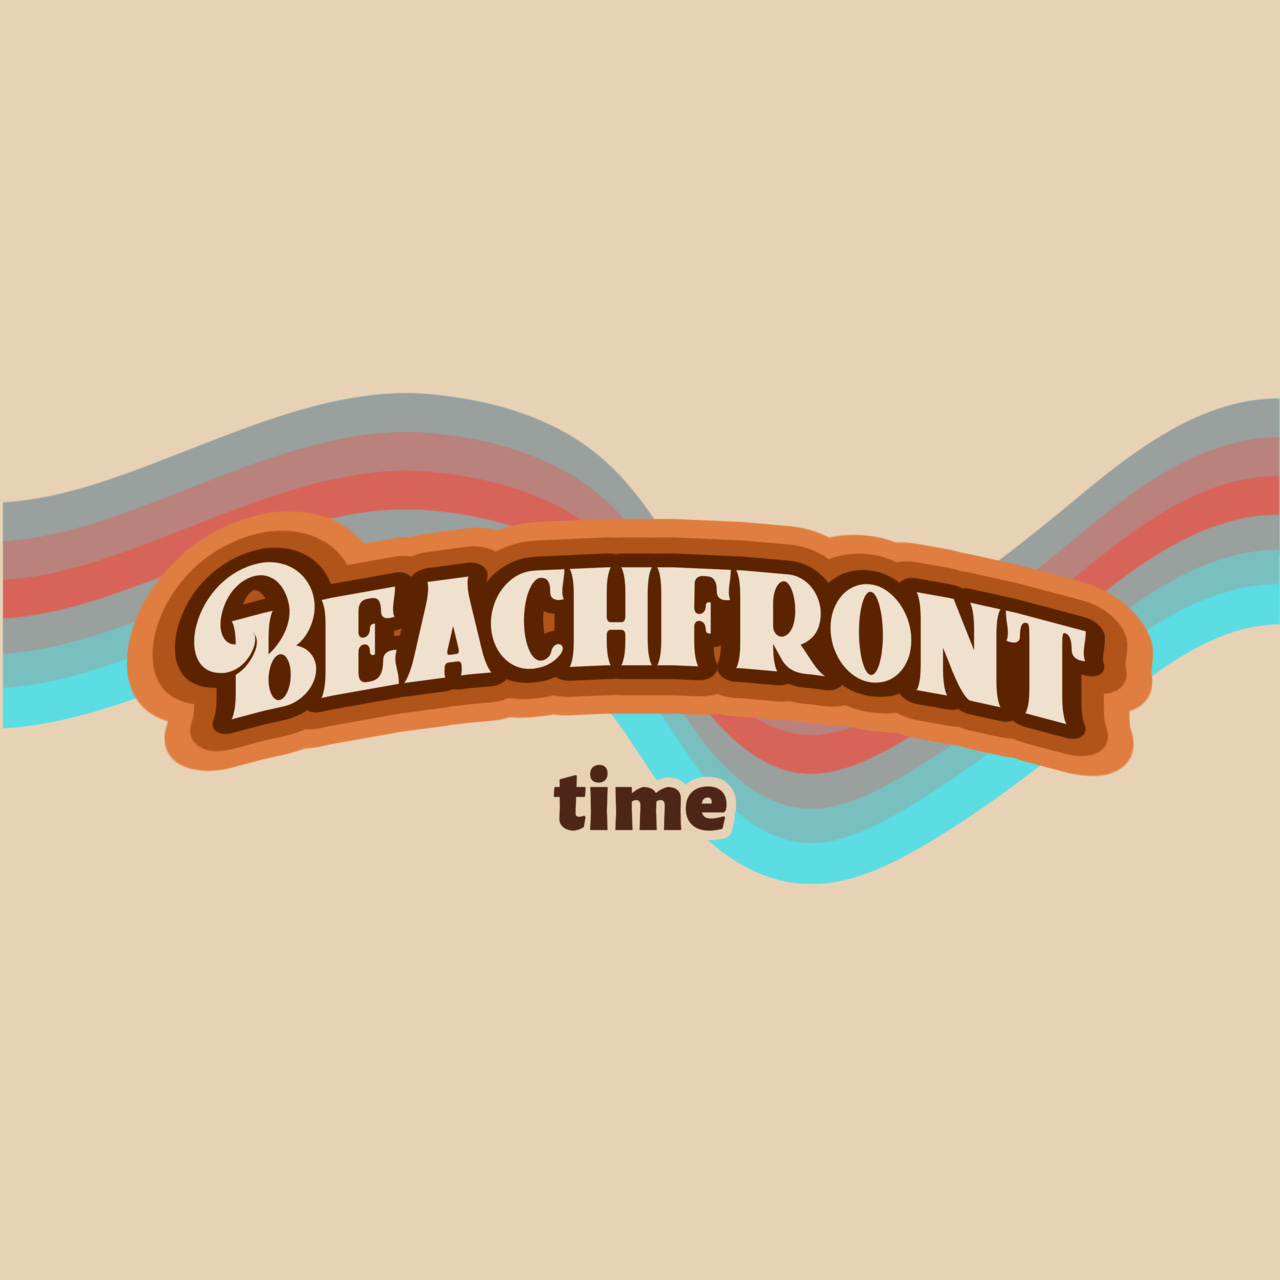 Artwork for Beachfront time